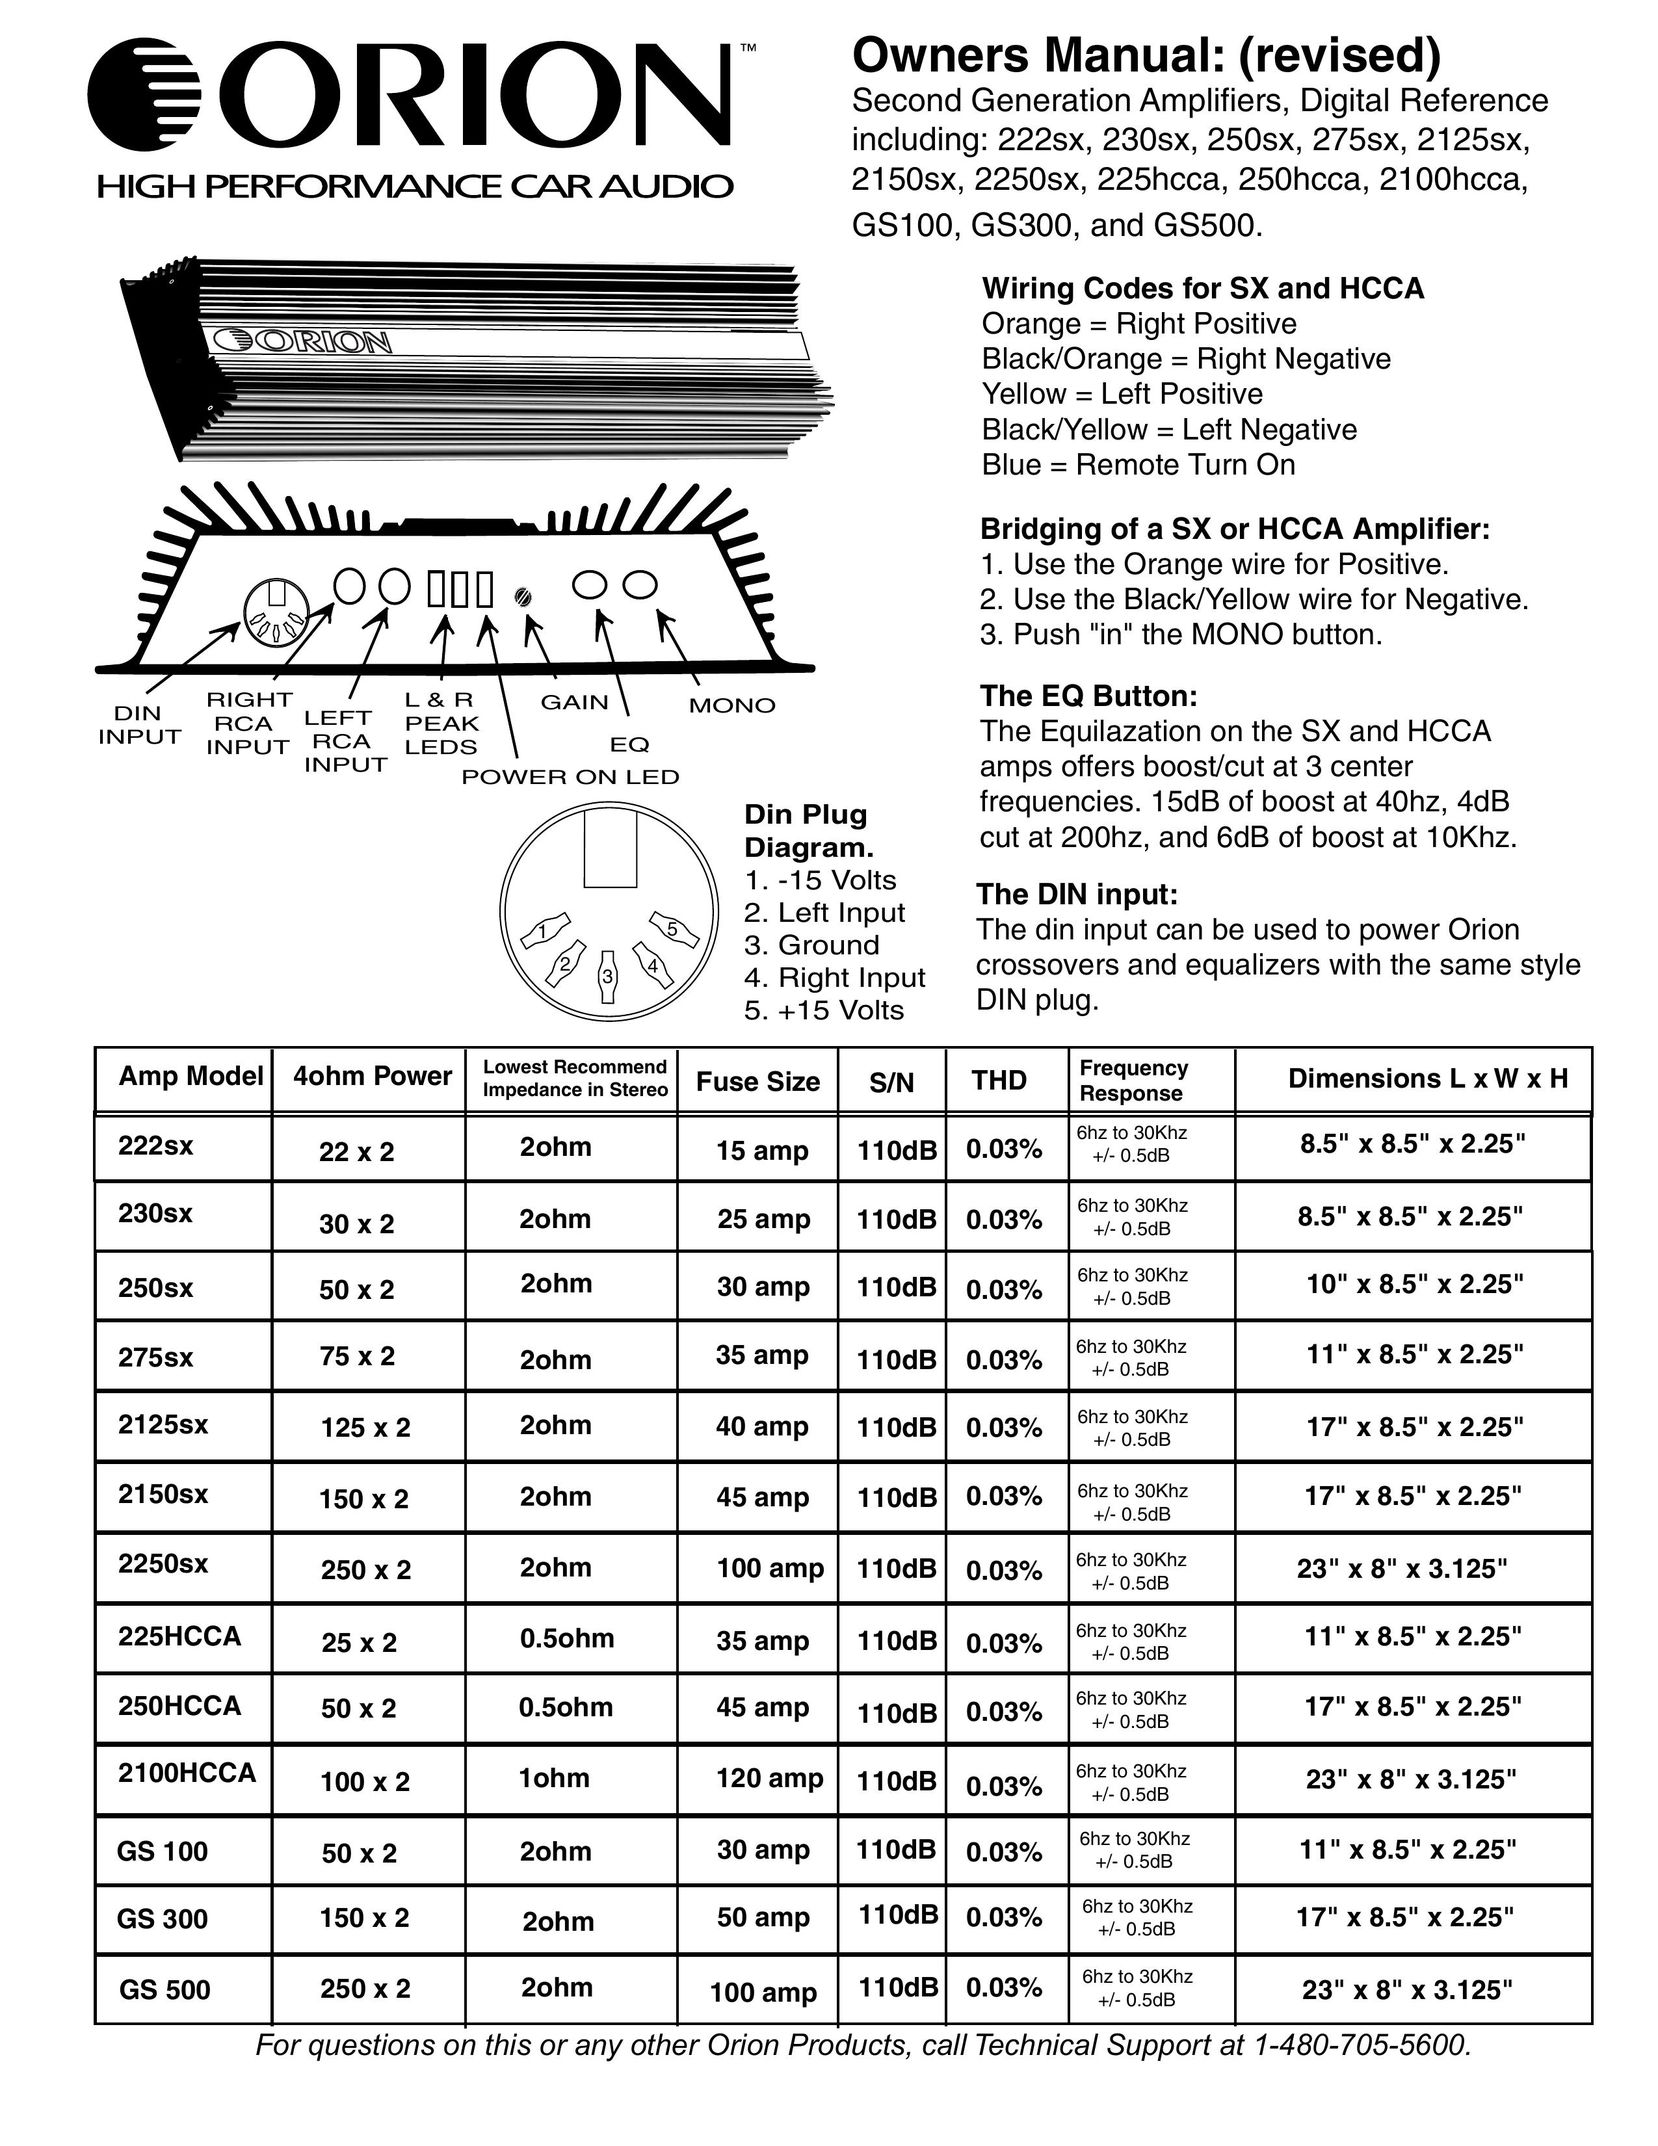 Orion Car Audio 225HCCA Car Amplifier User Manual